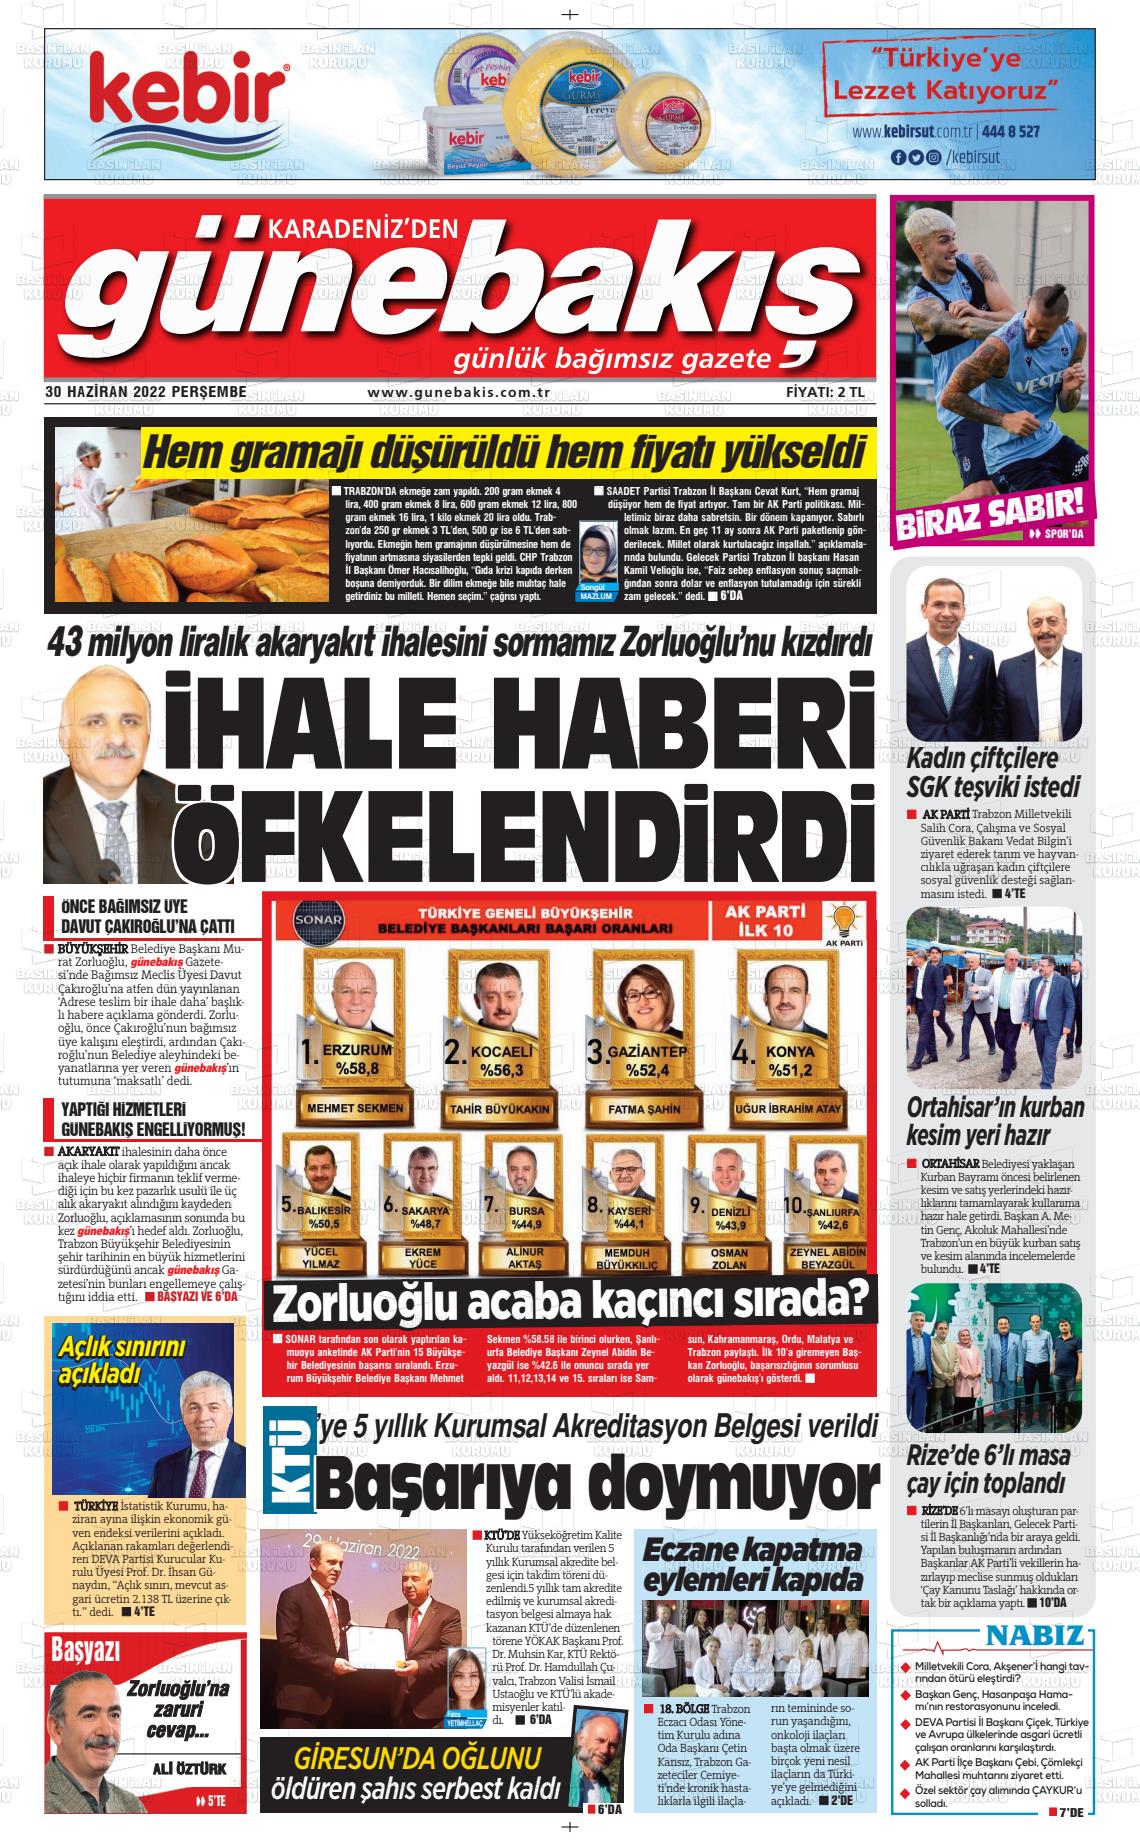 30 Haziran 2022 Günebakış Gazete Manşeti